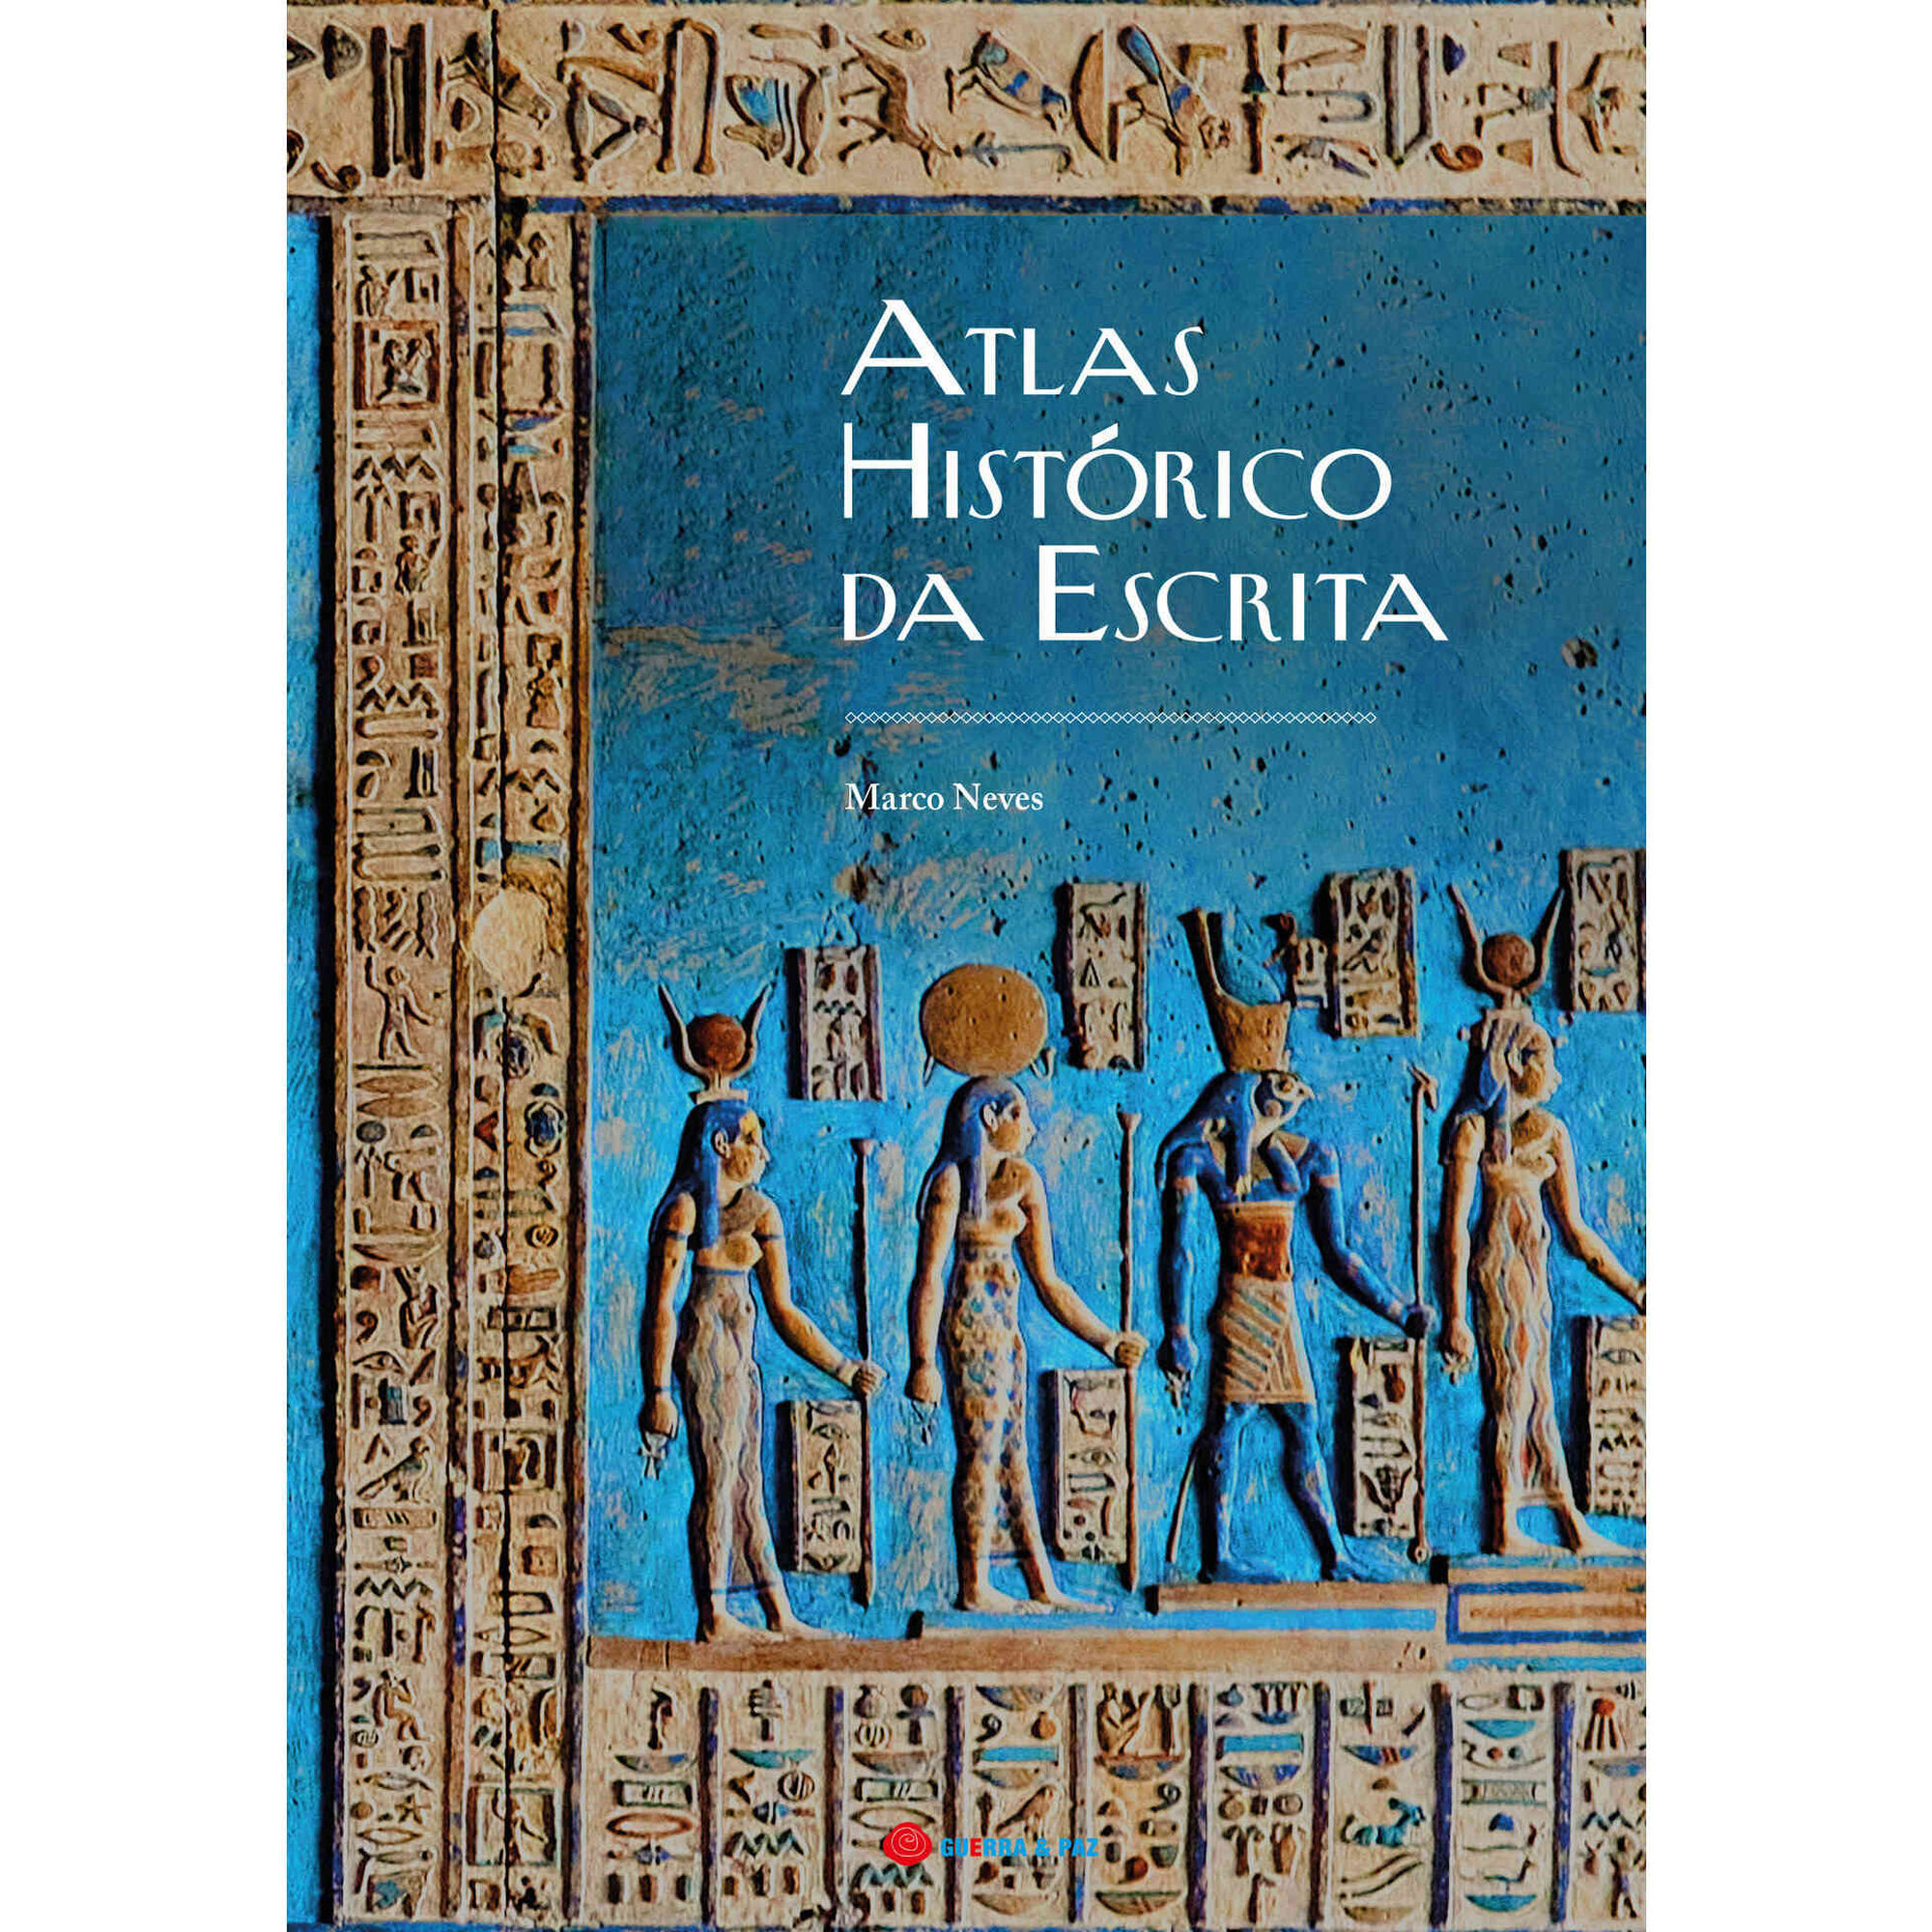 Atlas Histórico da Escrita